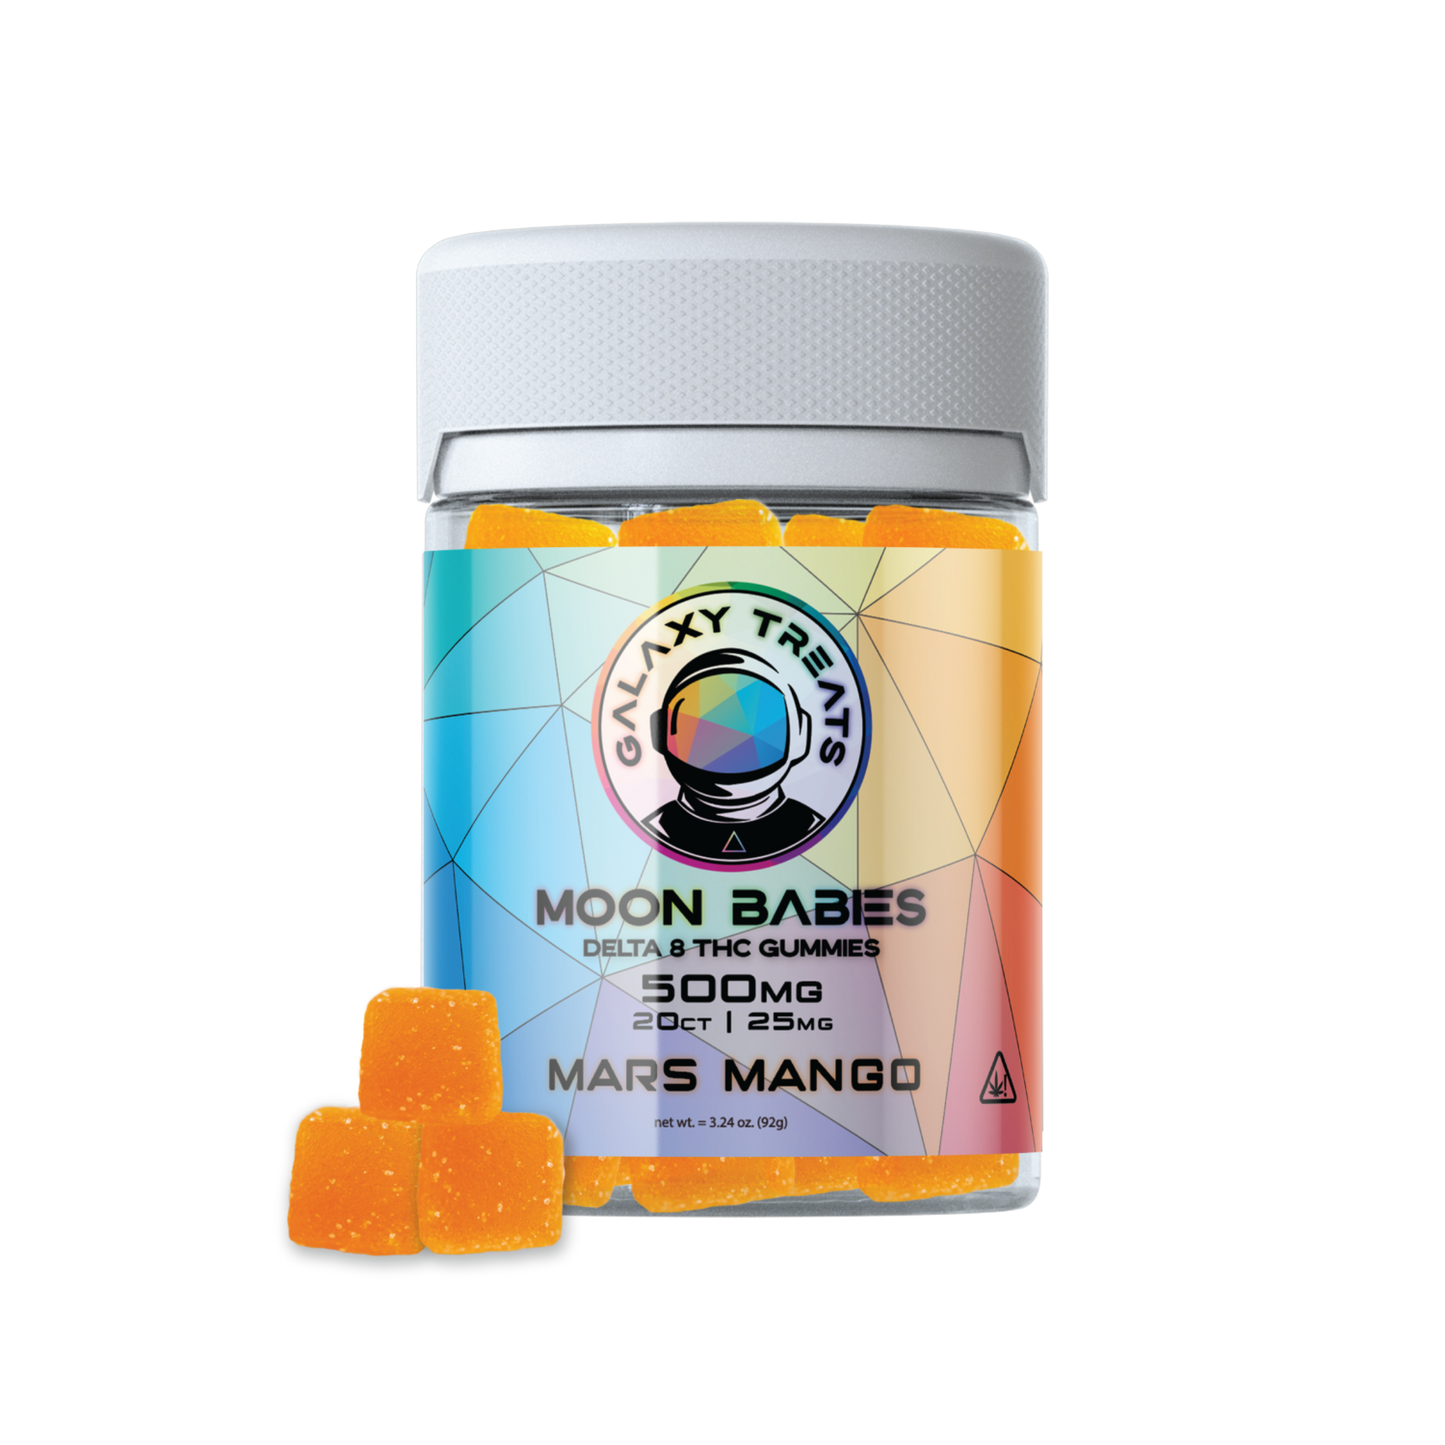 galaxy treats moon babies delta-8 thc mars mango gummies